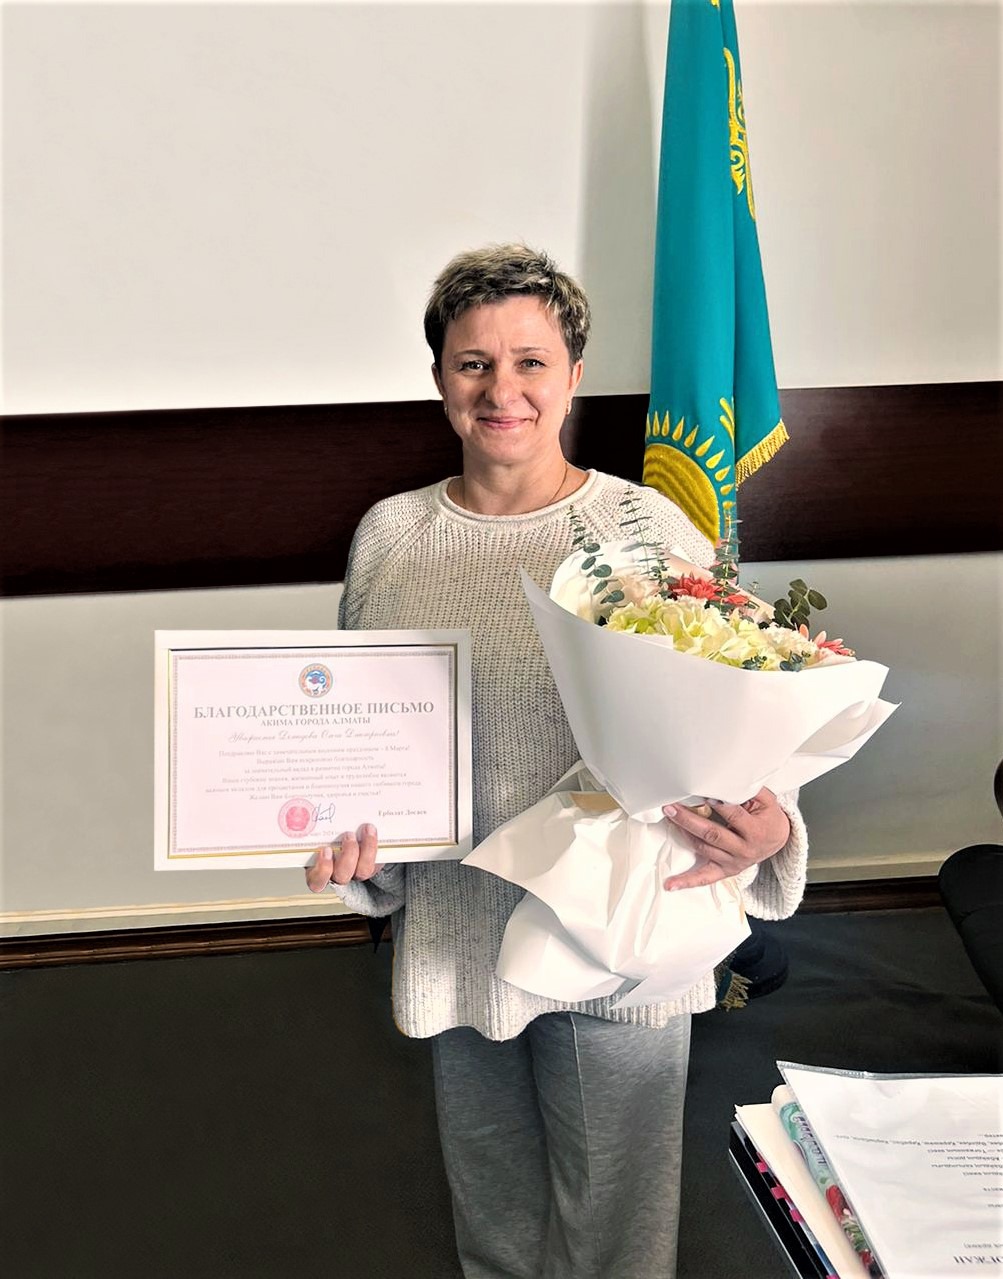 Руководитель цирковых номеров Ольга Демидова получила Благодарственное письмо от Акима г. Алматы